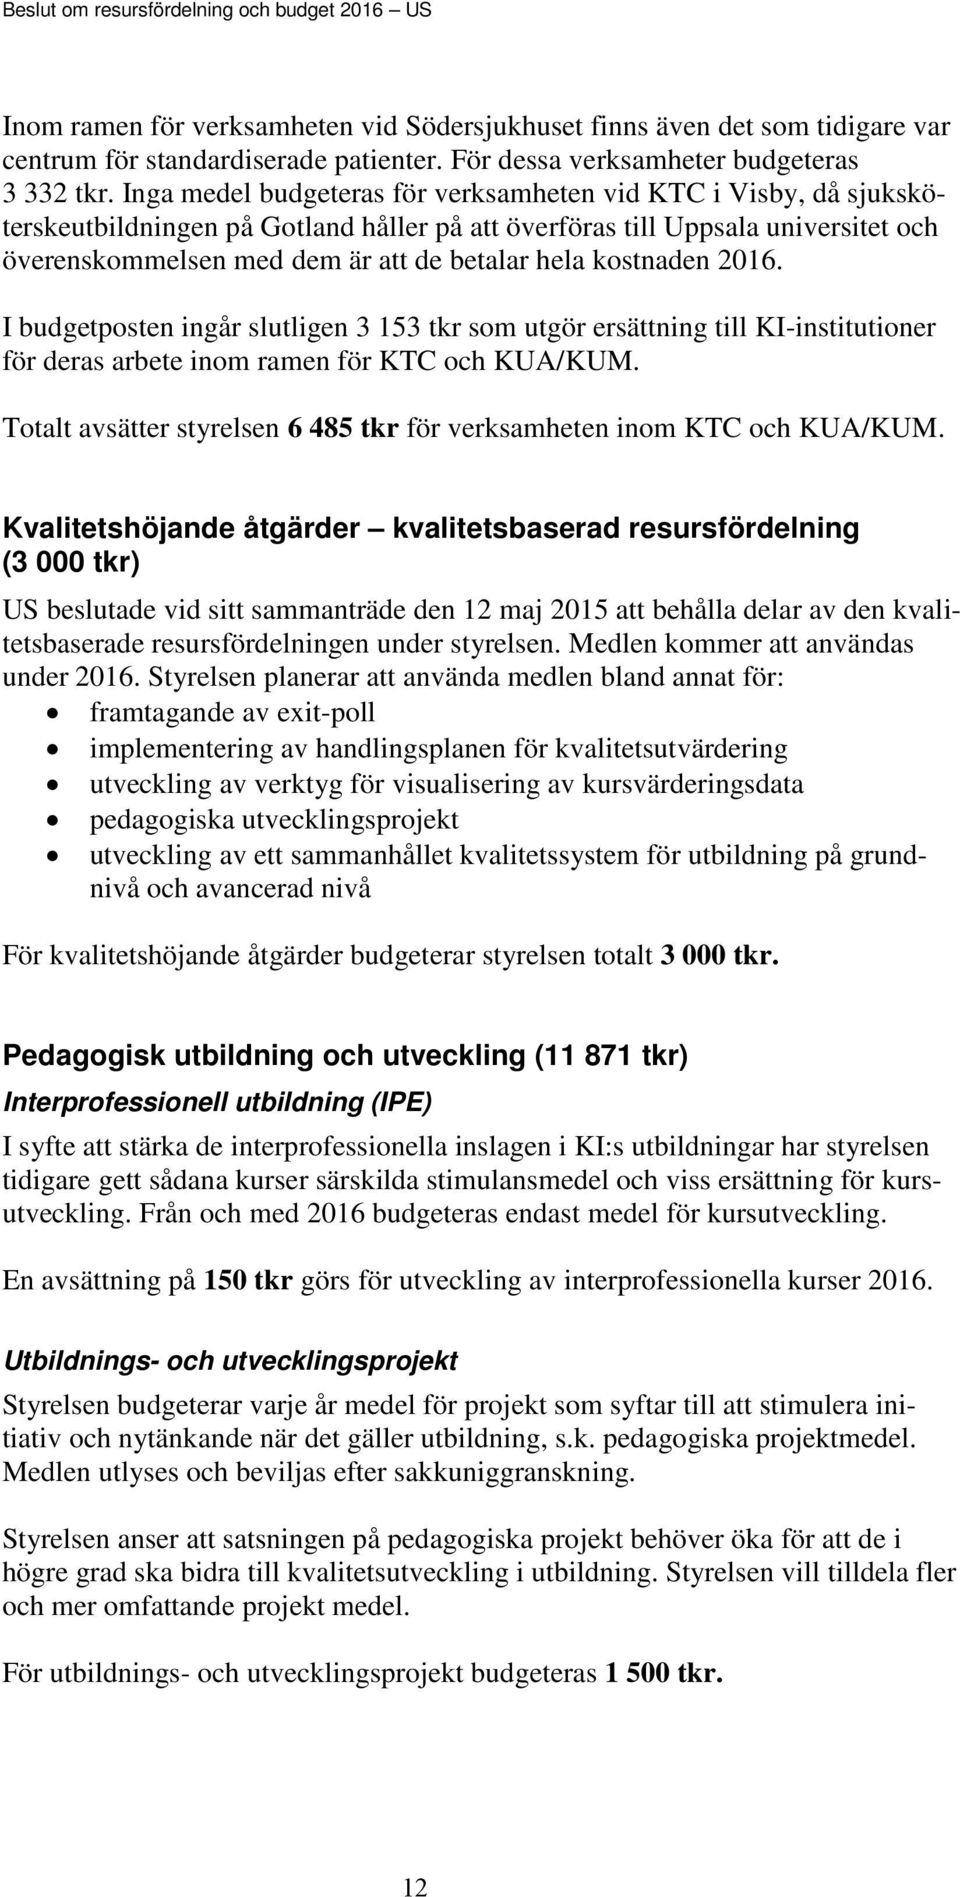 Inga medel budgeteras för verksamheten vid KTC i Visby, då sjuksköterskeutbildningen på Gotland håller på att överföras till Uppsala universitet och överenskommelsen med dem är att de betalar hela